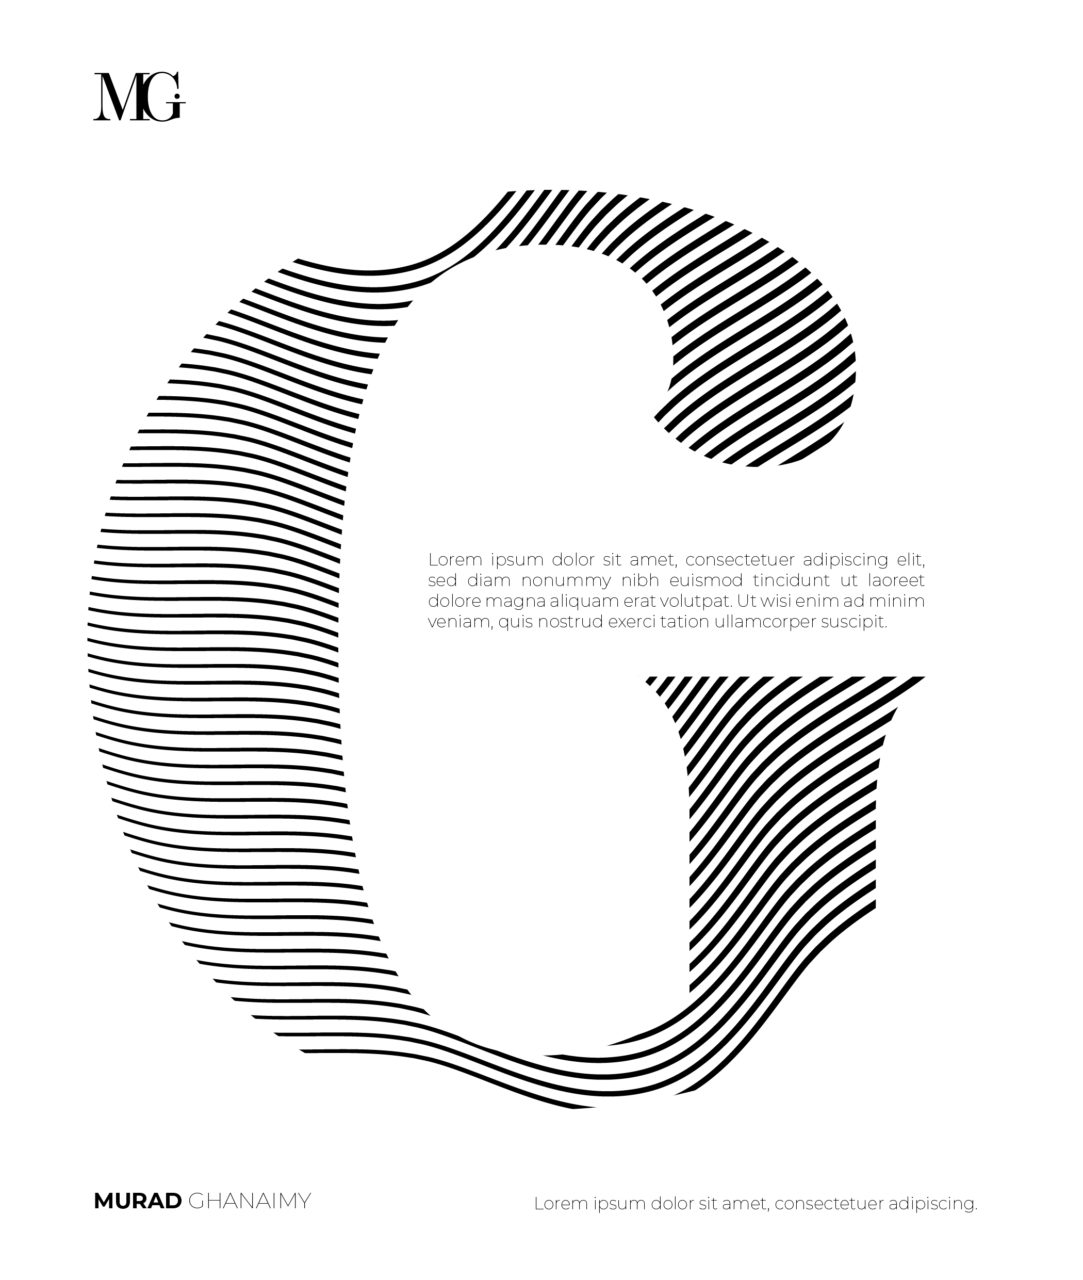 Murad-design-studio-designagentur-murad-ghanaimy-design-werbung-kreativ-typografie-kunst